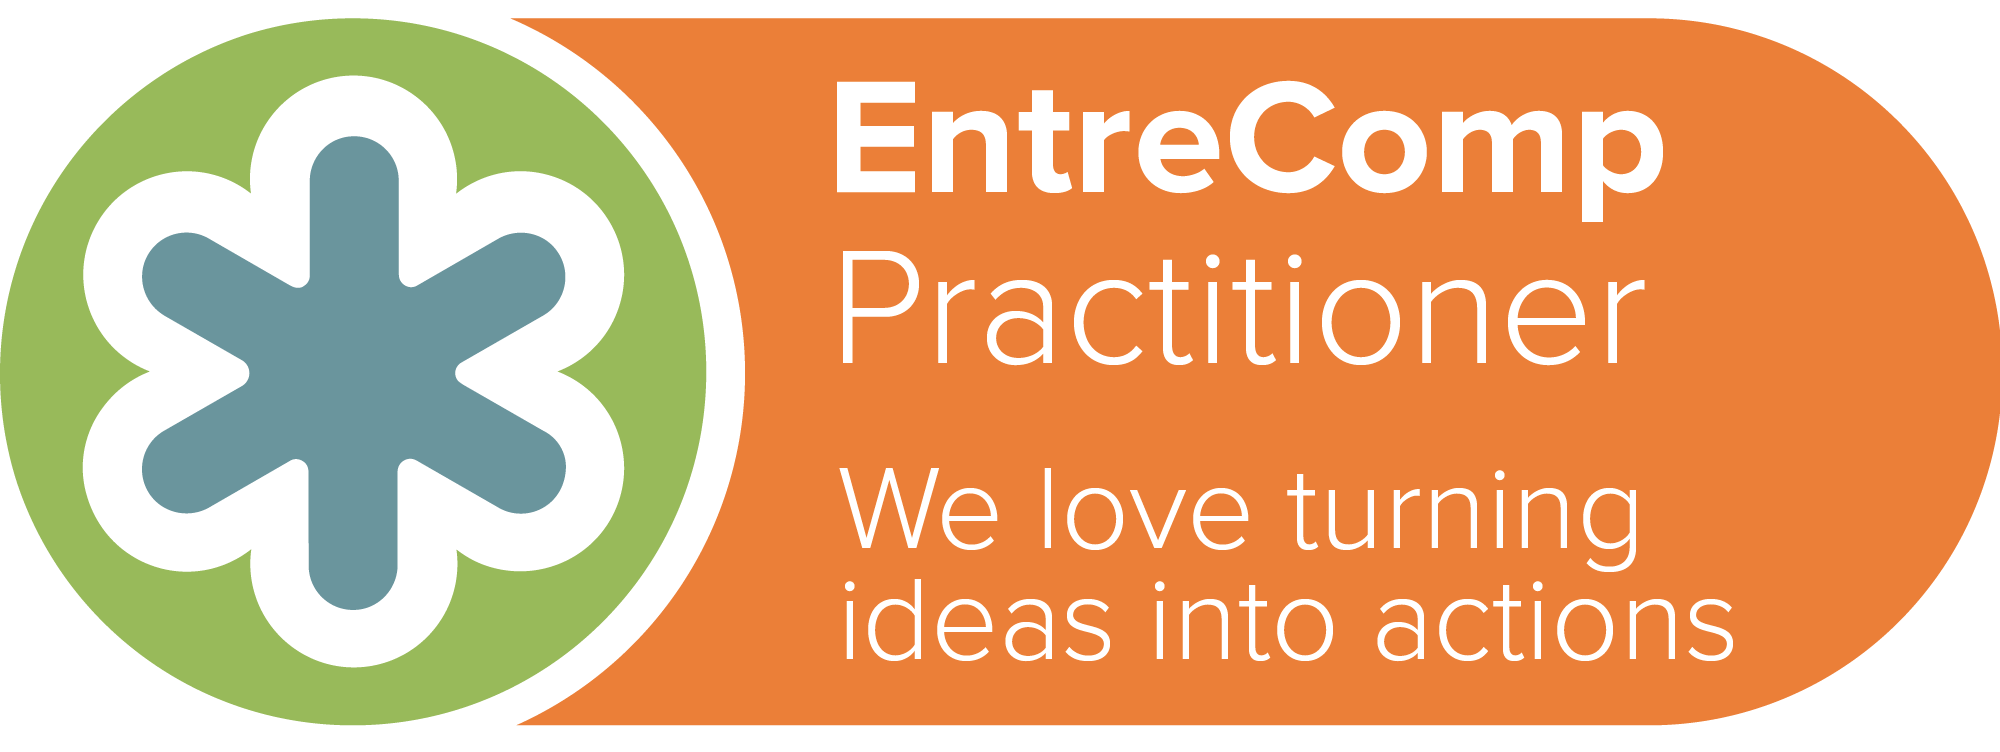 entrecomp-practitioner-organisation-logo